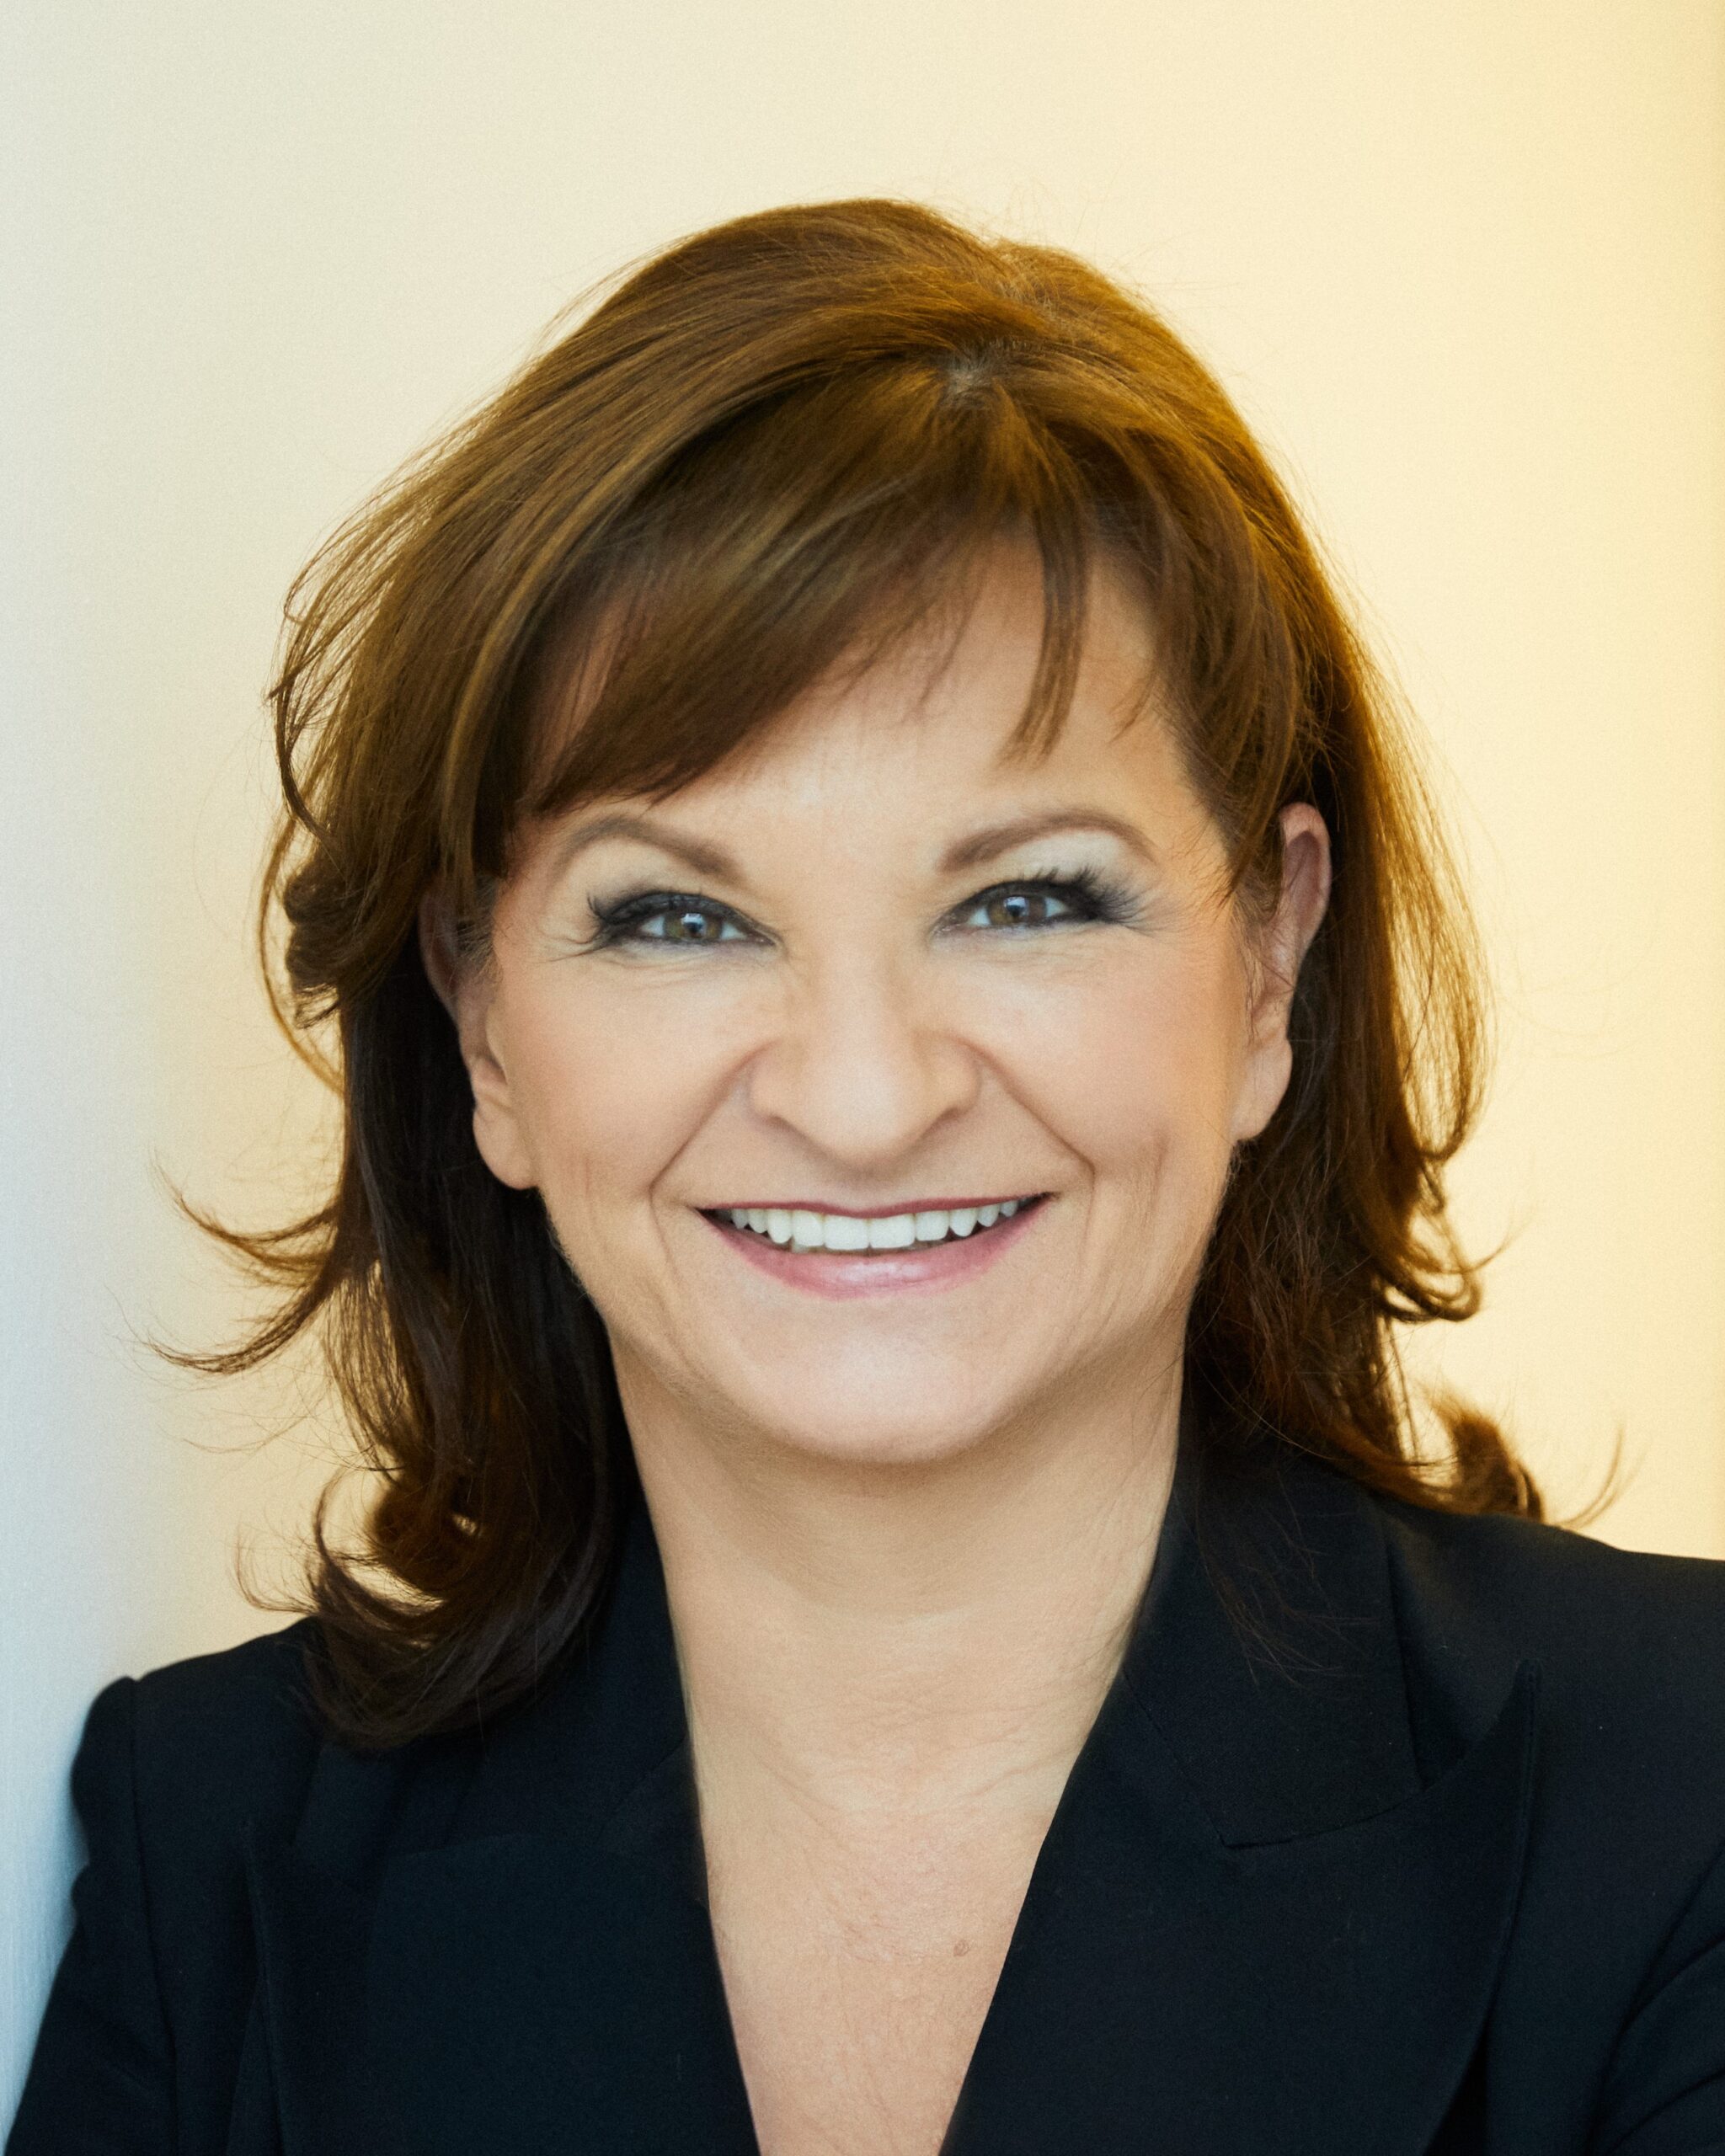 Generaldirektorin Dr. Susanne Riess